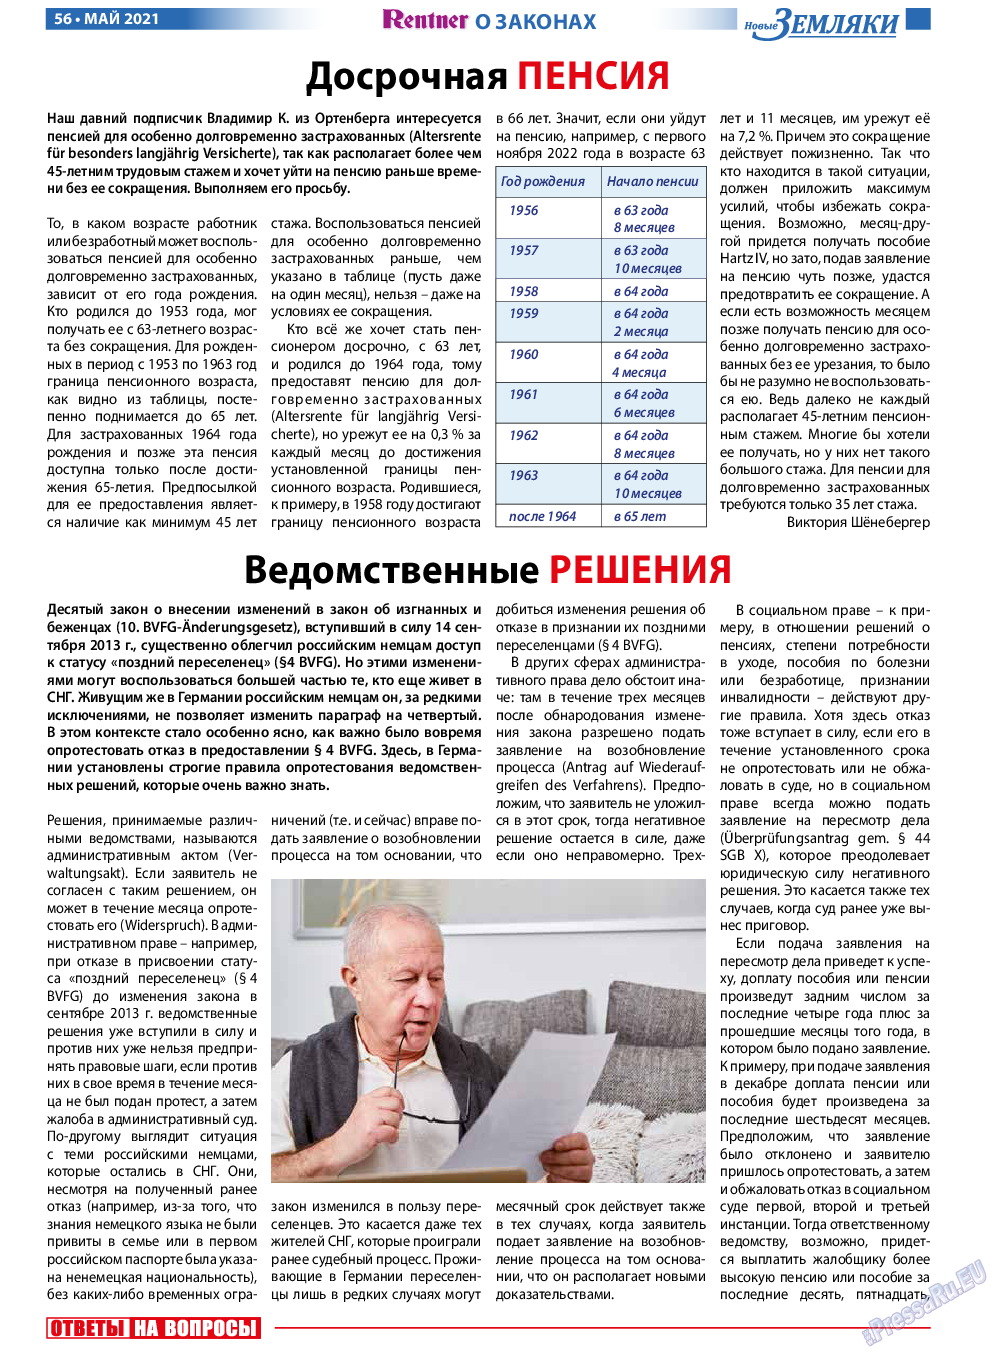 Новые Земляки, газета. 2021 №5 стр.56